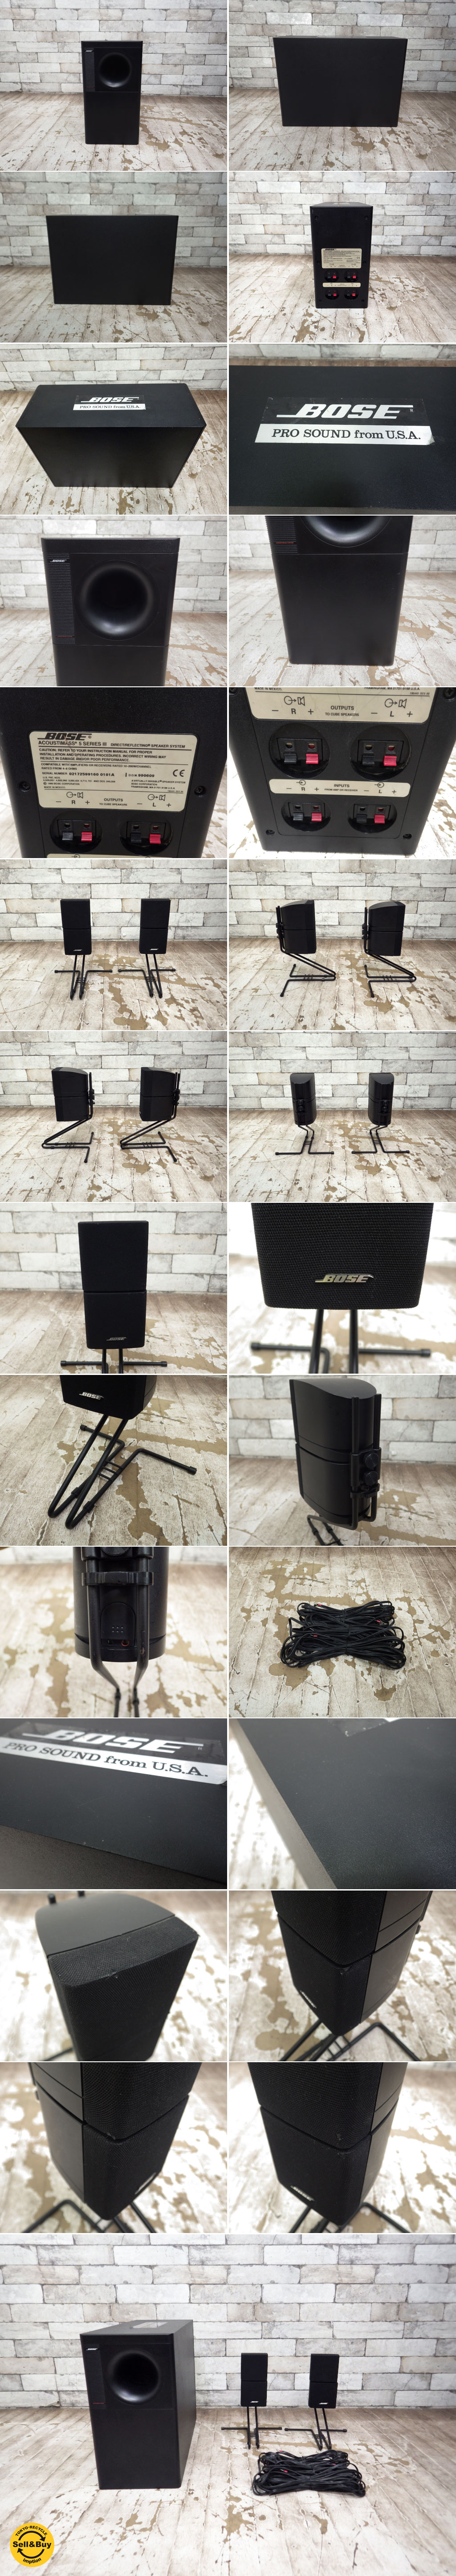 ボーズ Bose Acoustimass 5 Series III スピーカーシステム speaker system ○ - TOKYO  RECYCLE imption | 東京・世田谷のリサイクルショップ デザイナーズ・北欧家具の販売・買取